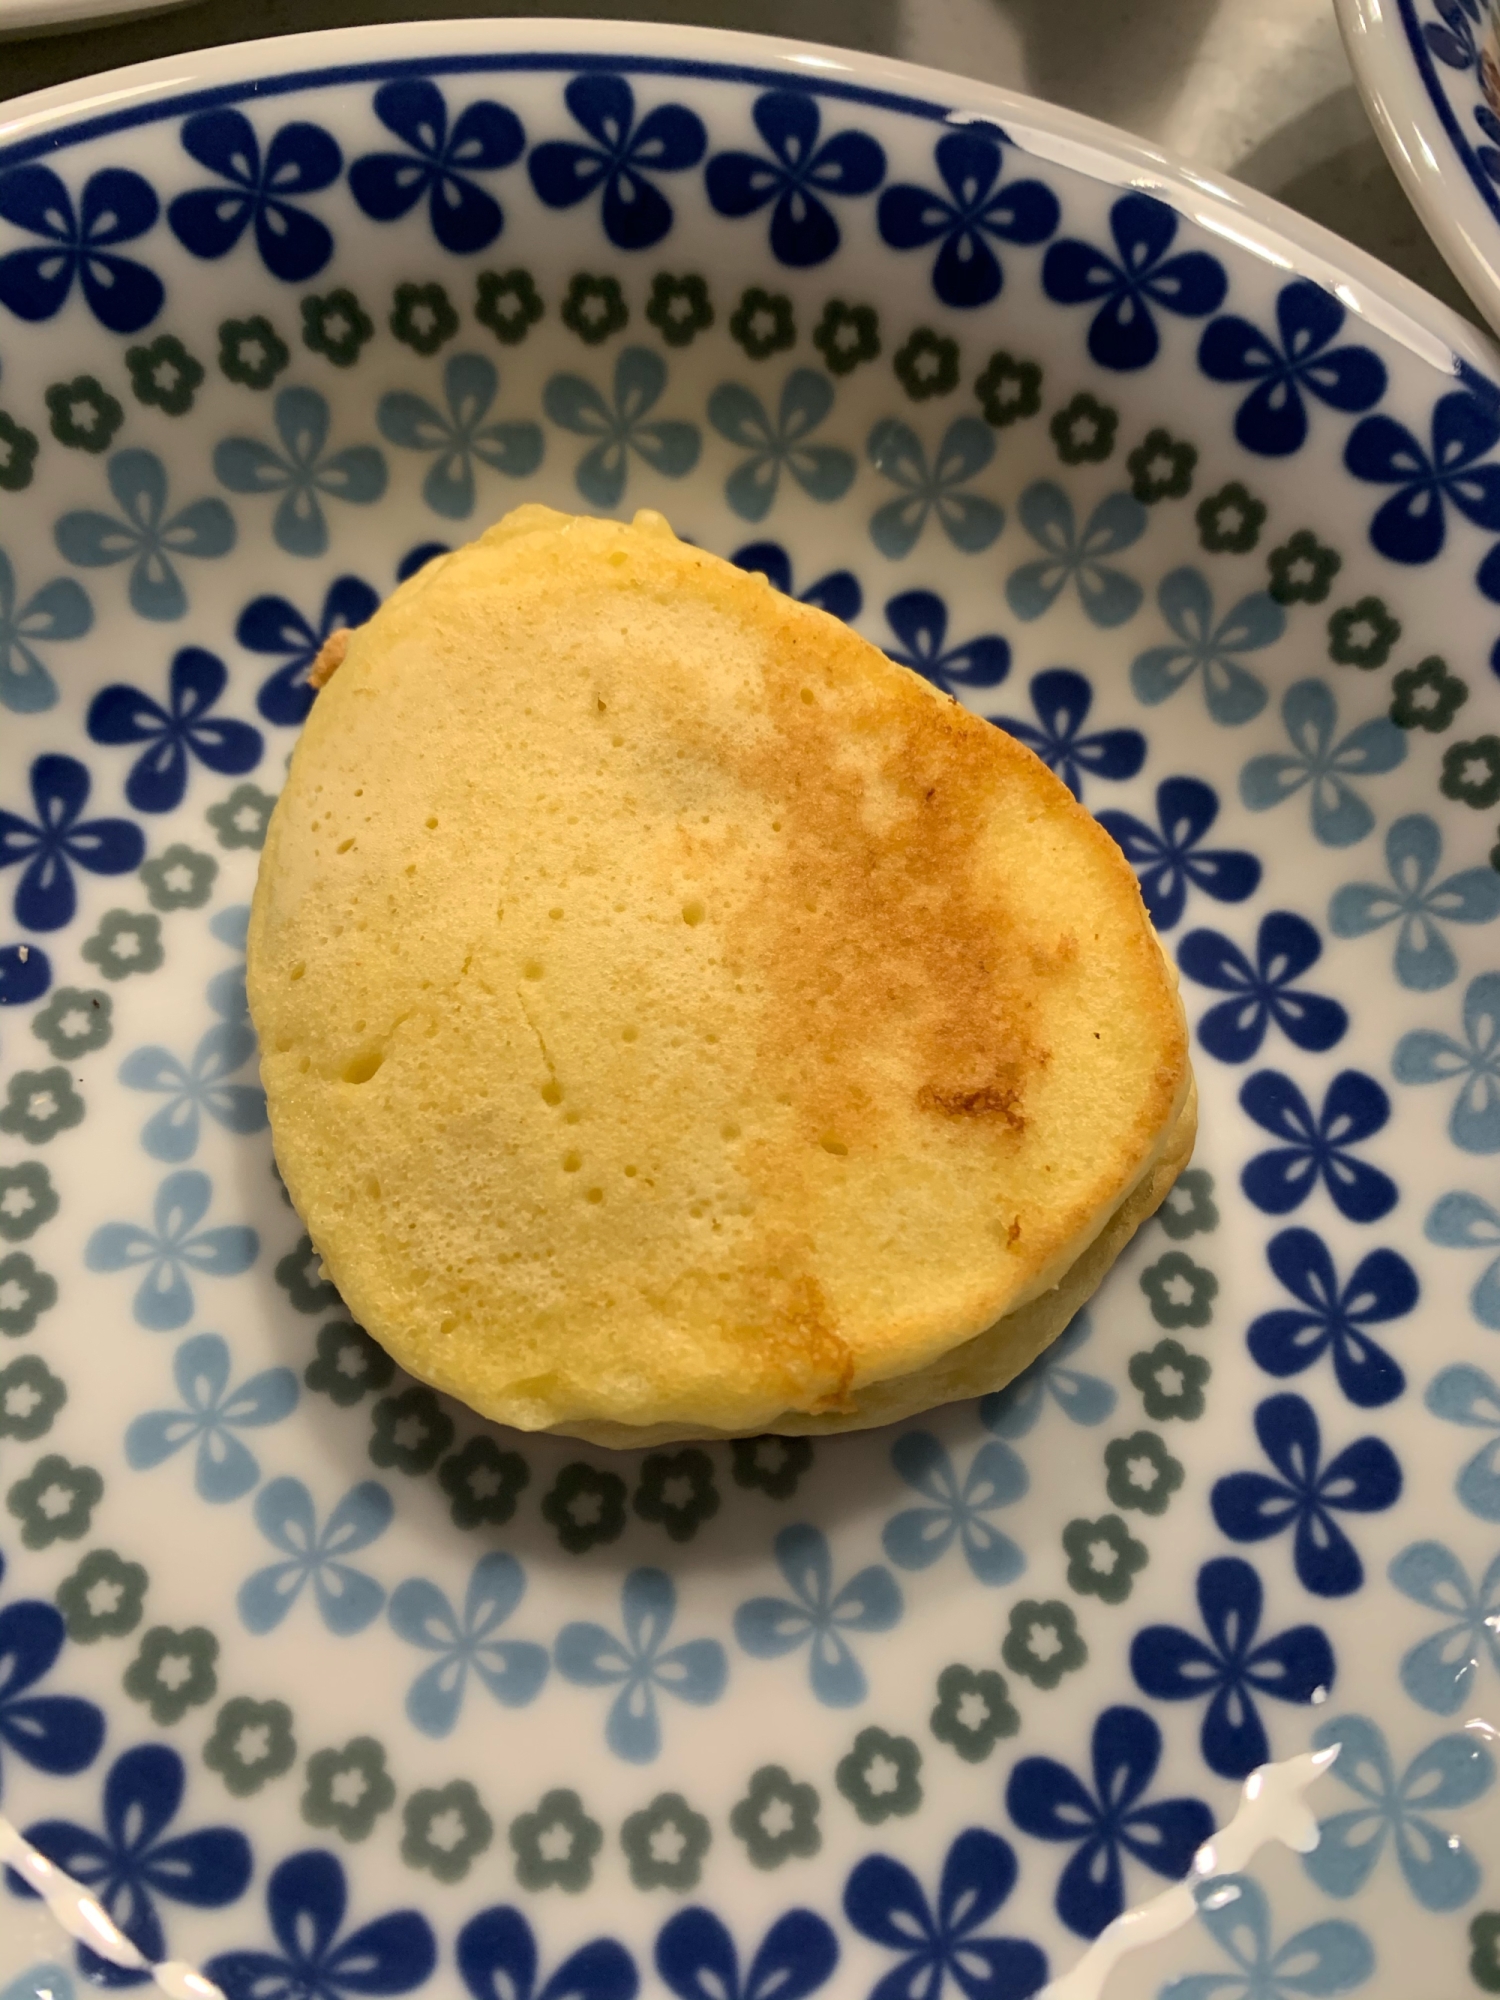 休日の朝食に☆豆腐パンケーキ